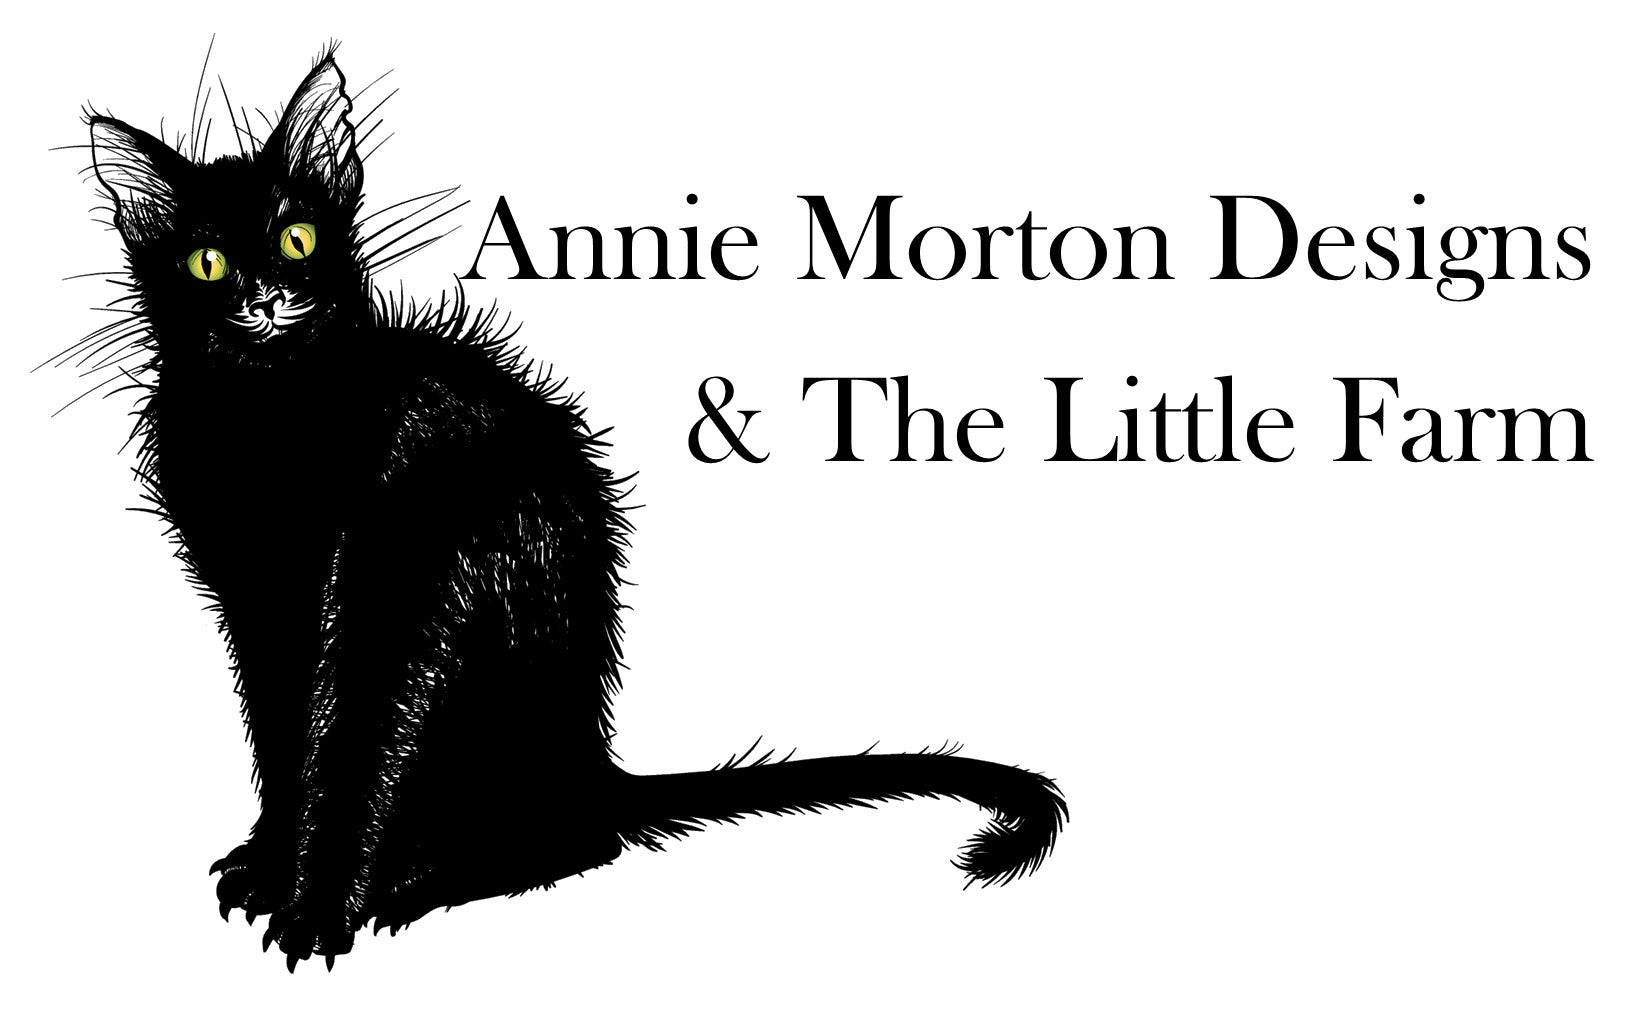 The Little Farm & Annie Morton Designs